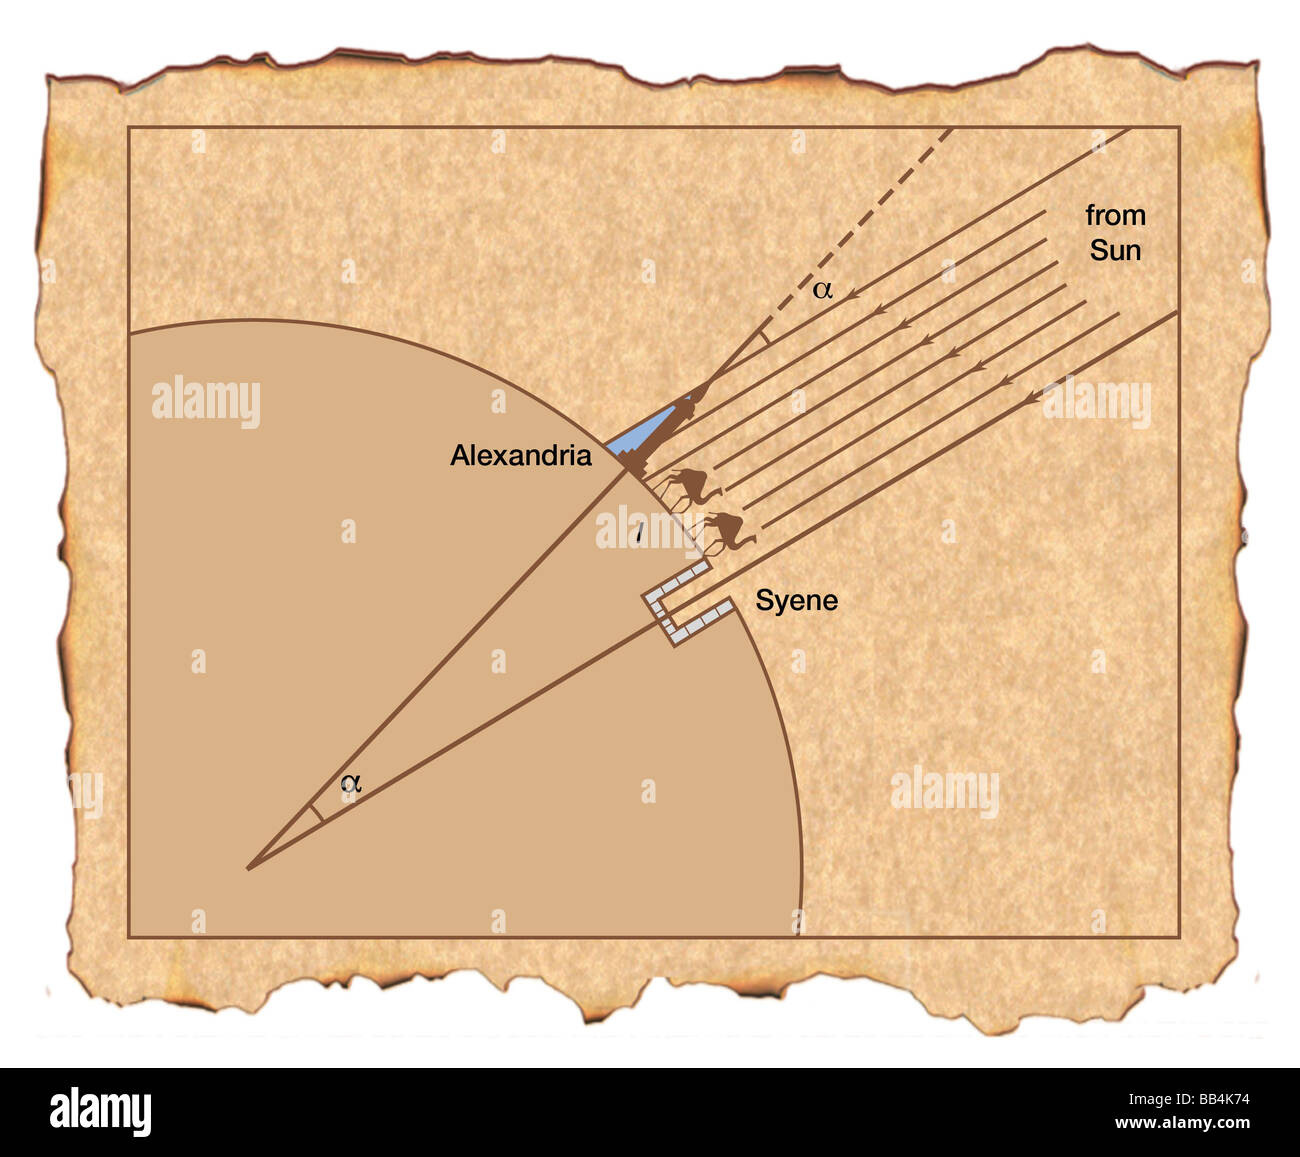 Eratosthenes Kenntnis der Position und Entfernung zwischen Punkten der Sonne ermöglichte es ihm, Umfang der Erde berechnen. Stockfoto